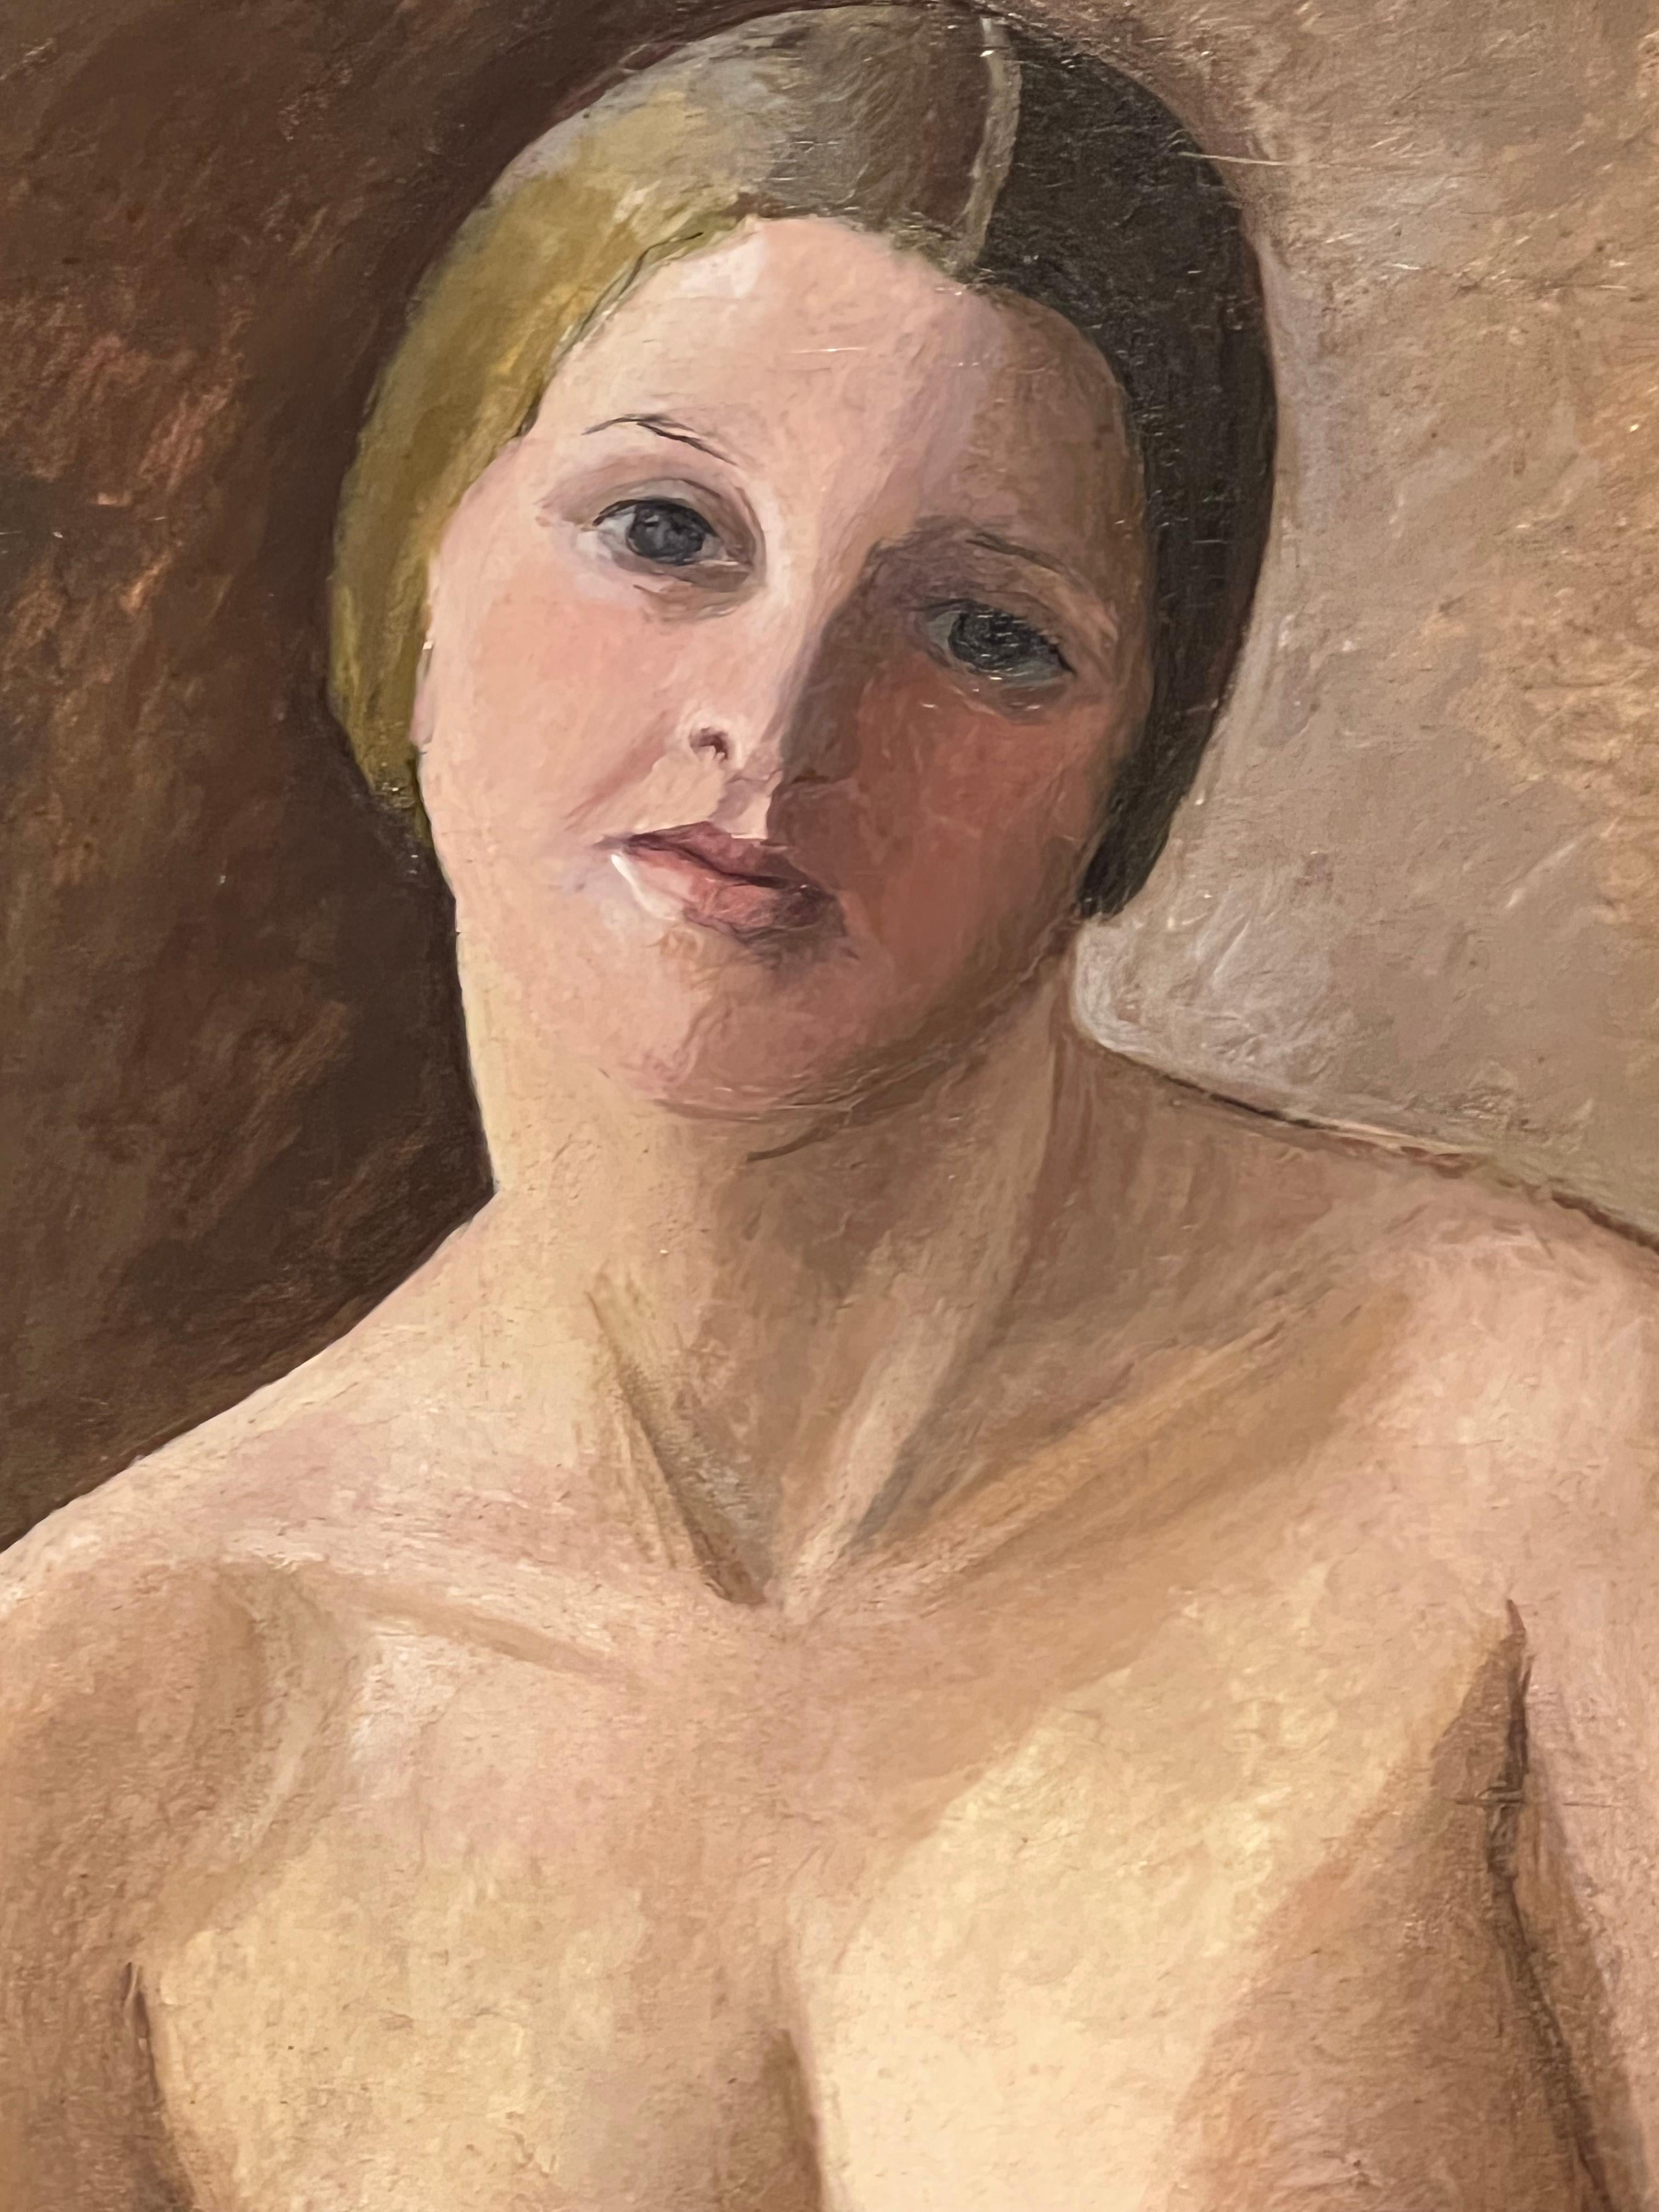 Huile sur bois Art Déco (tableau) représentant une belle figure nue d'une jeune femme par Süe et Mare.
Compagnie des Arts Français.
Fabriqué en France.
Vers 1925.